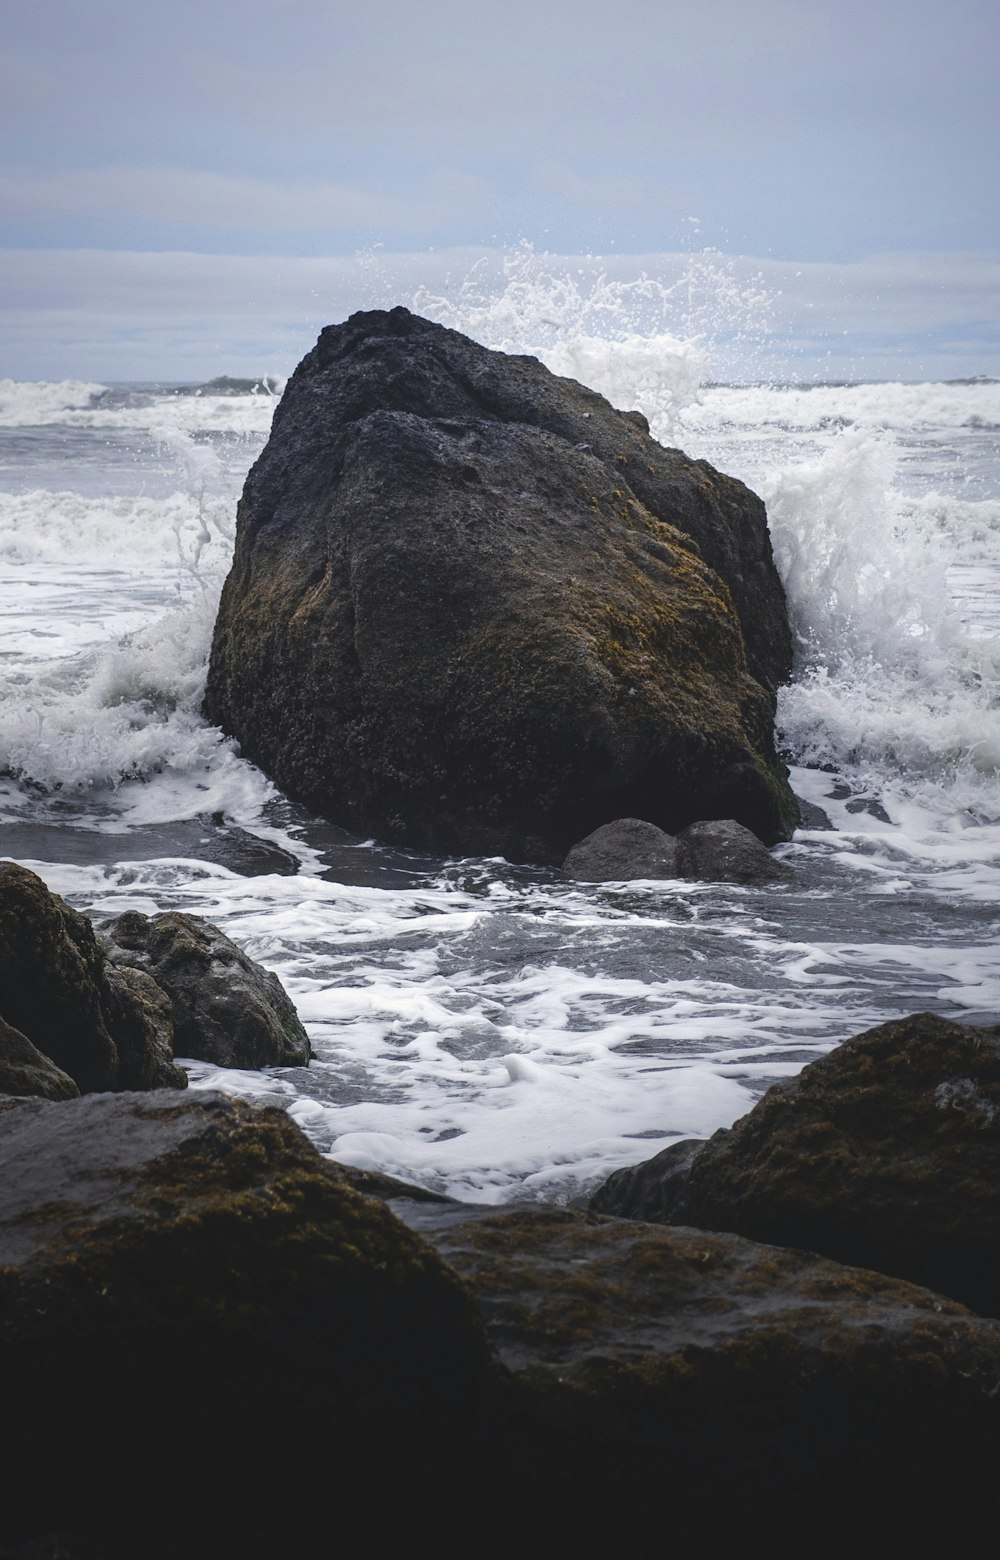 Braune Felsformation auf Meerwasser tagsüber